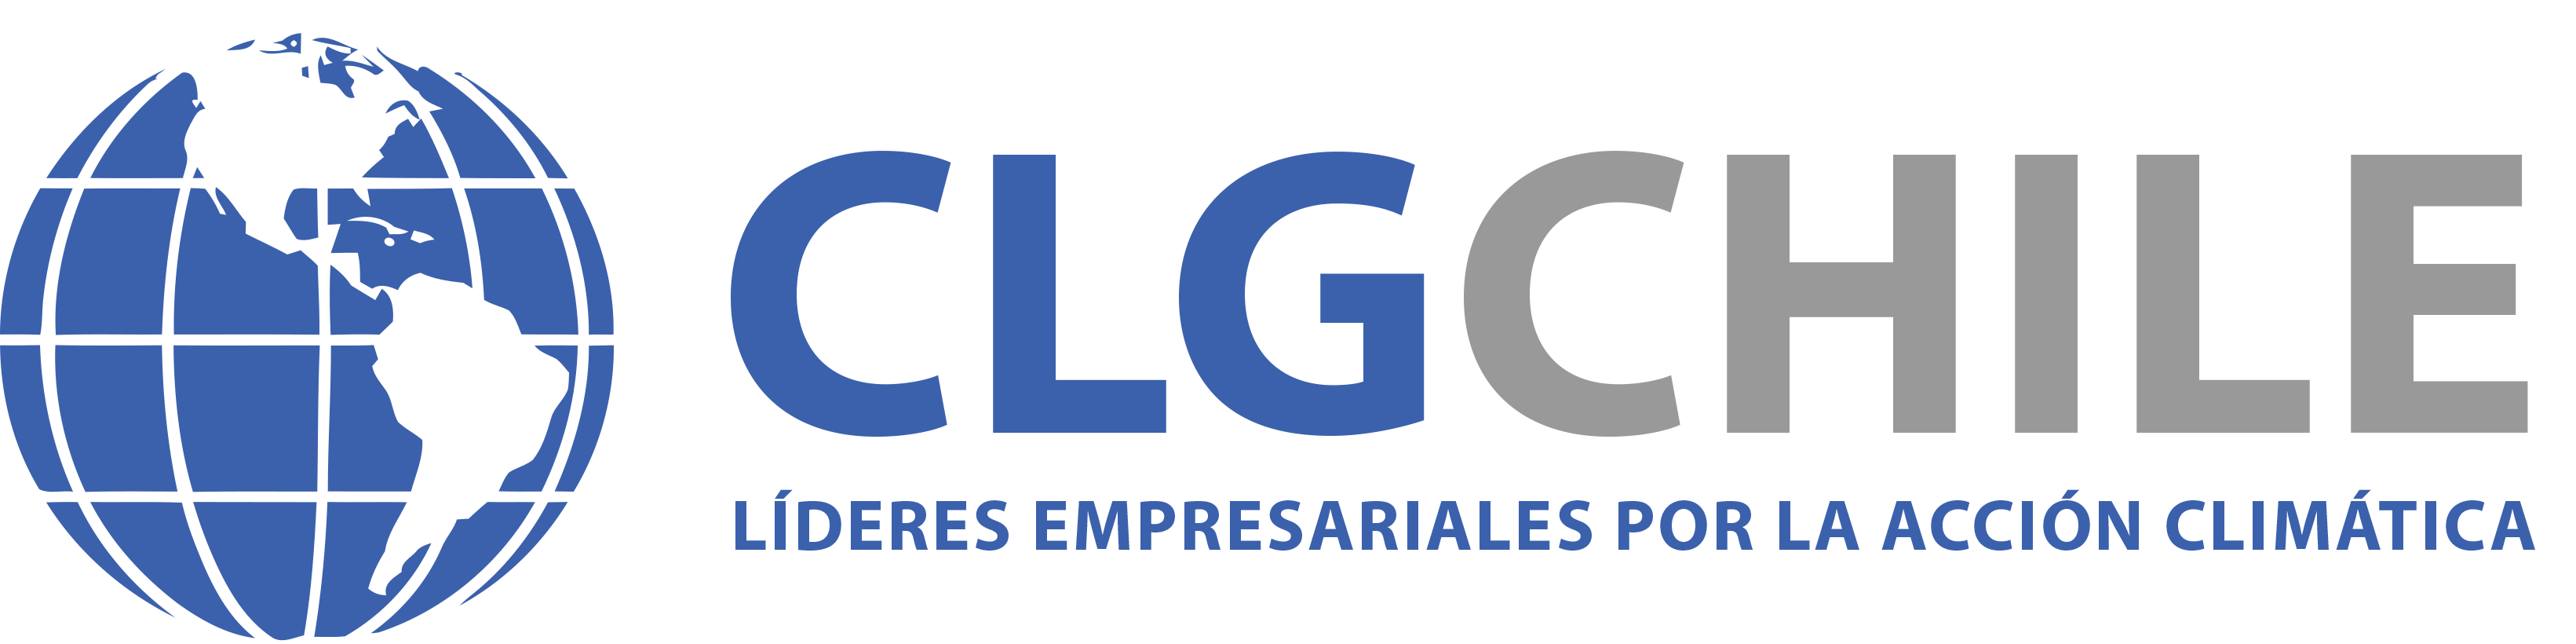 CLG Chile logo